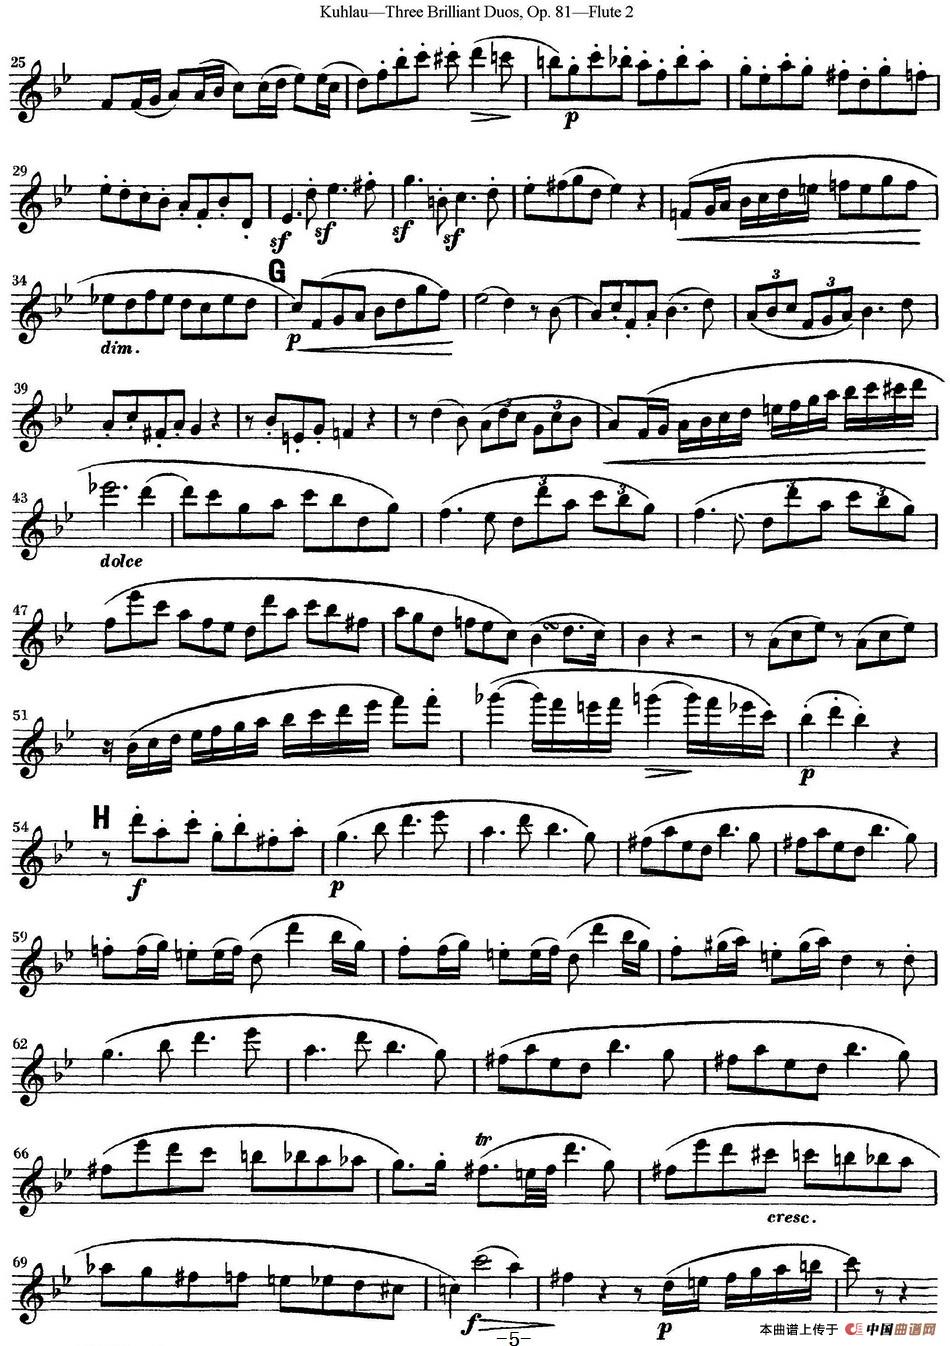 库劳长笛二重奏练习三段OP.81——Flute 2（NO.3）